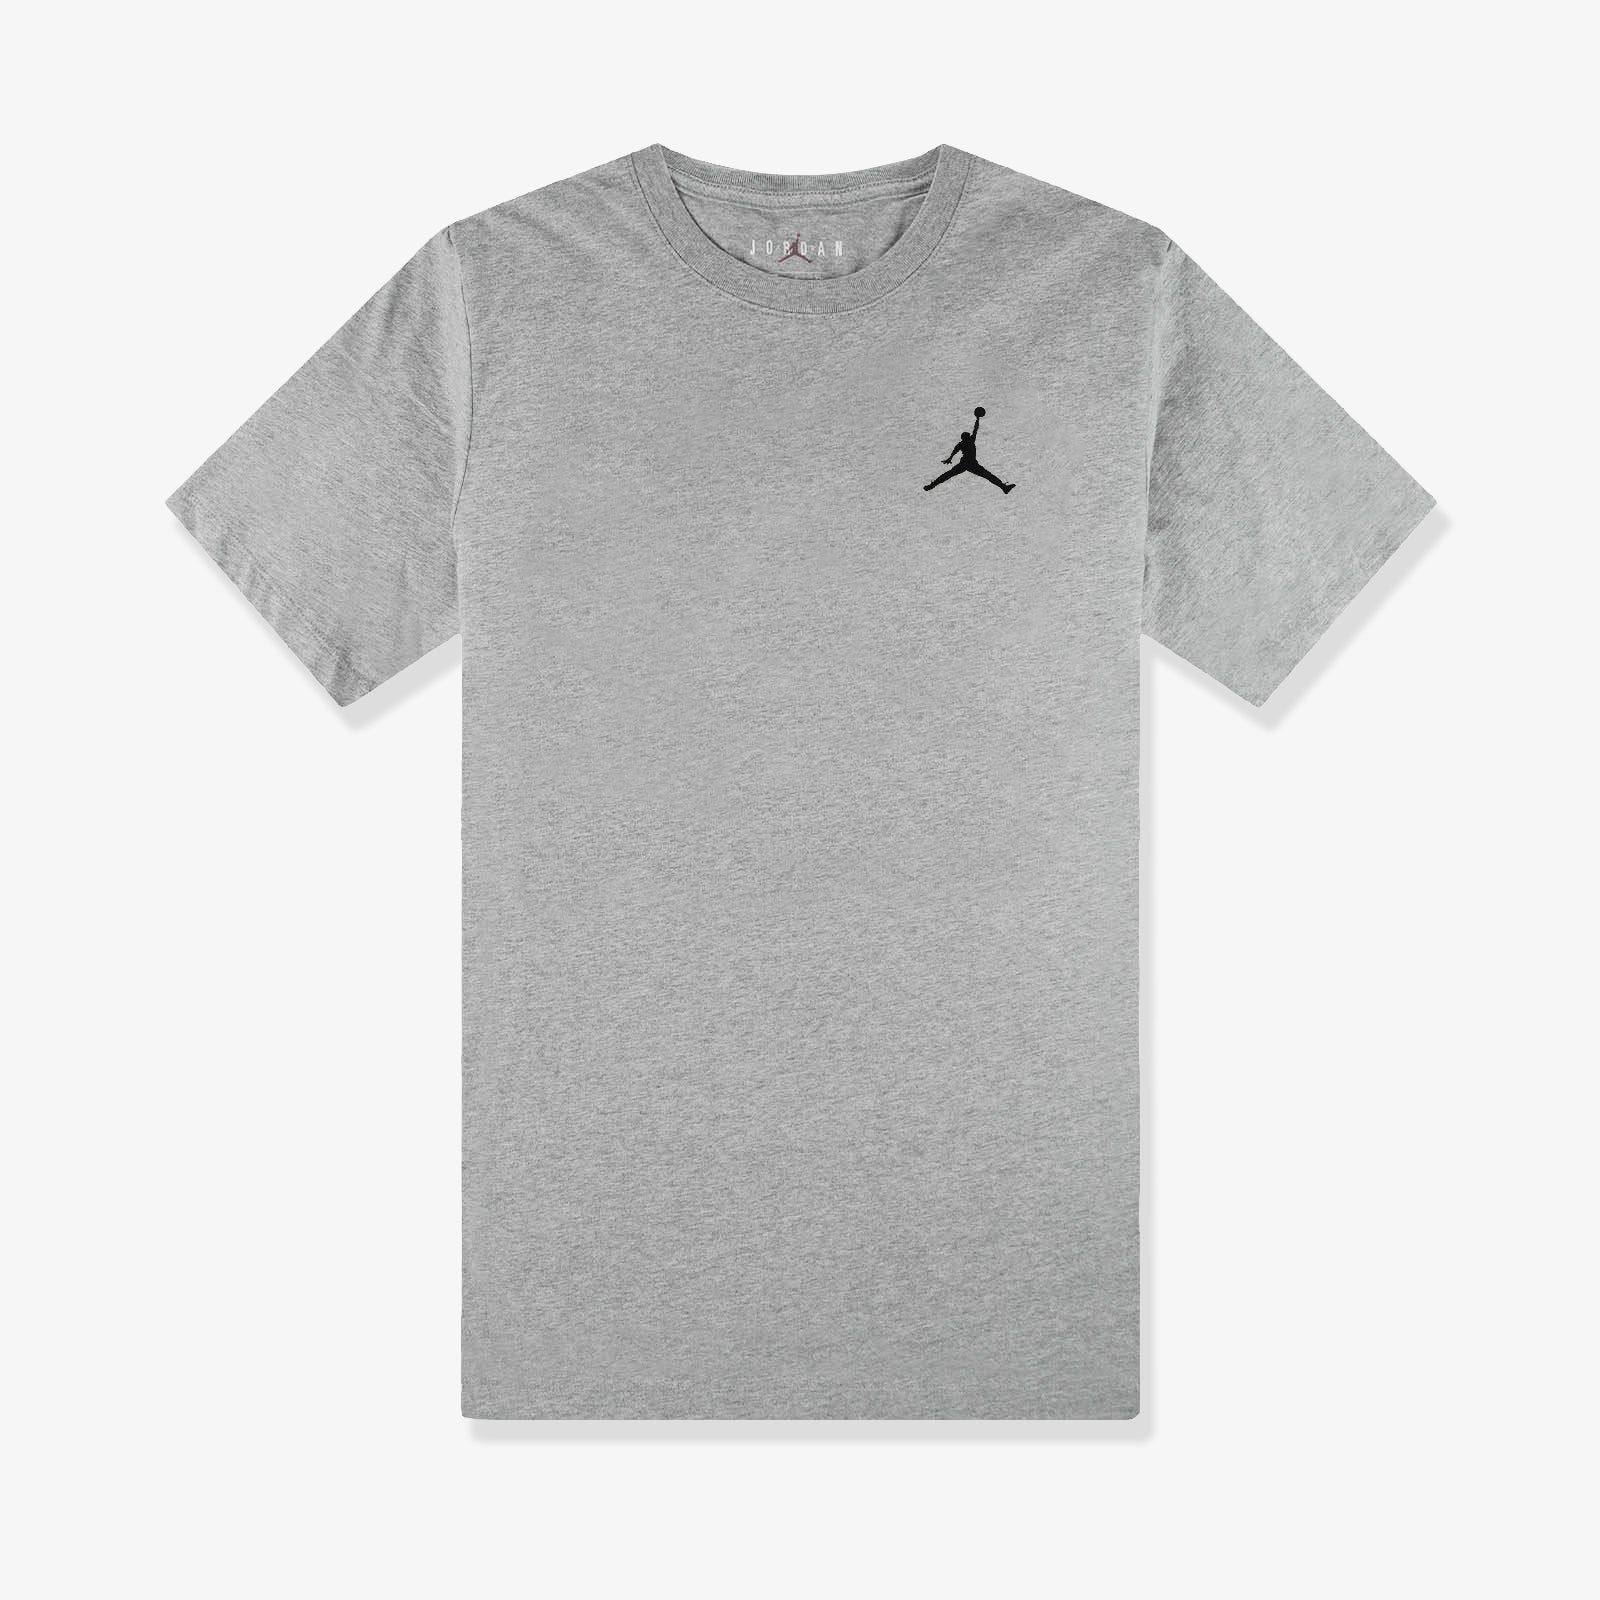 grey air jordan t shirt